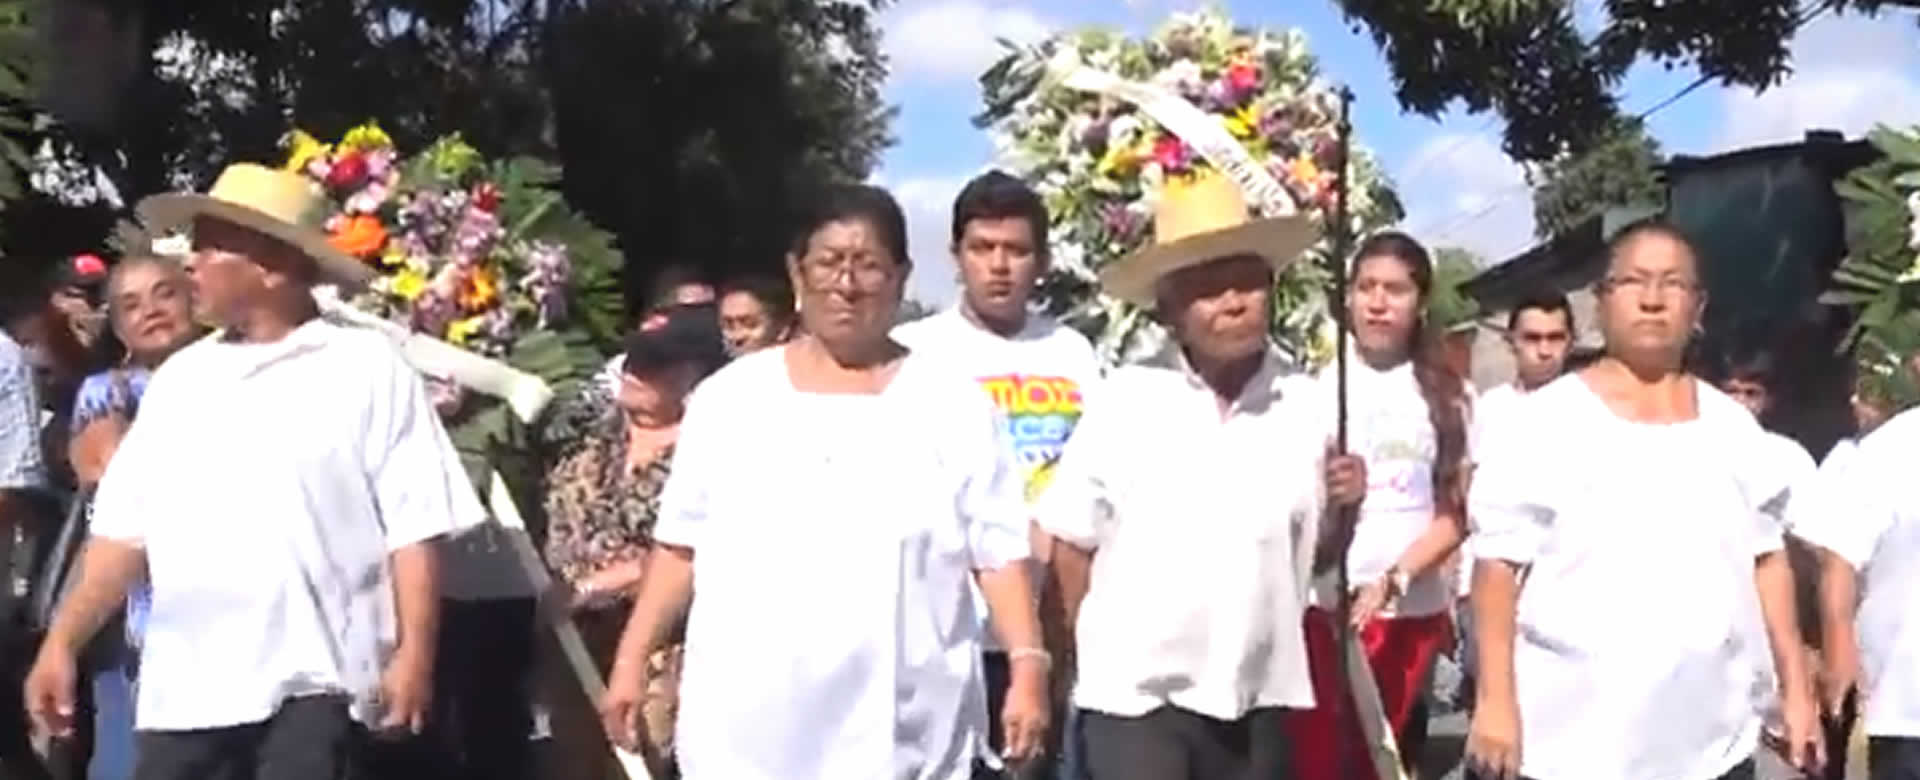 Masaya homenajea a héroes y mártires de la insurrección de Monimbó